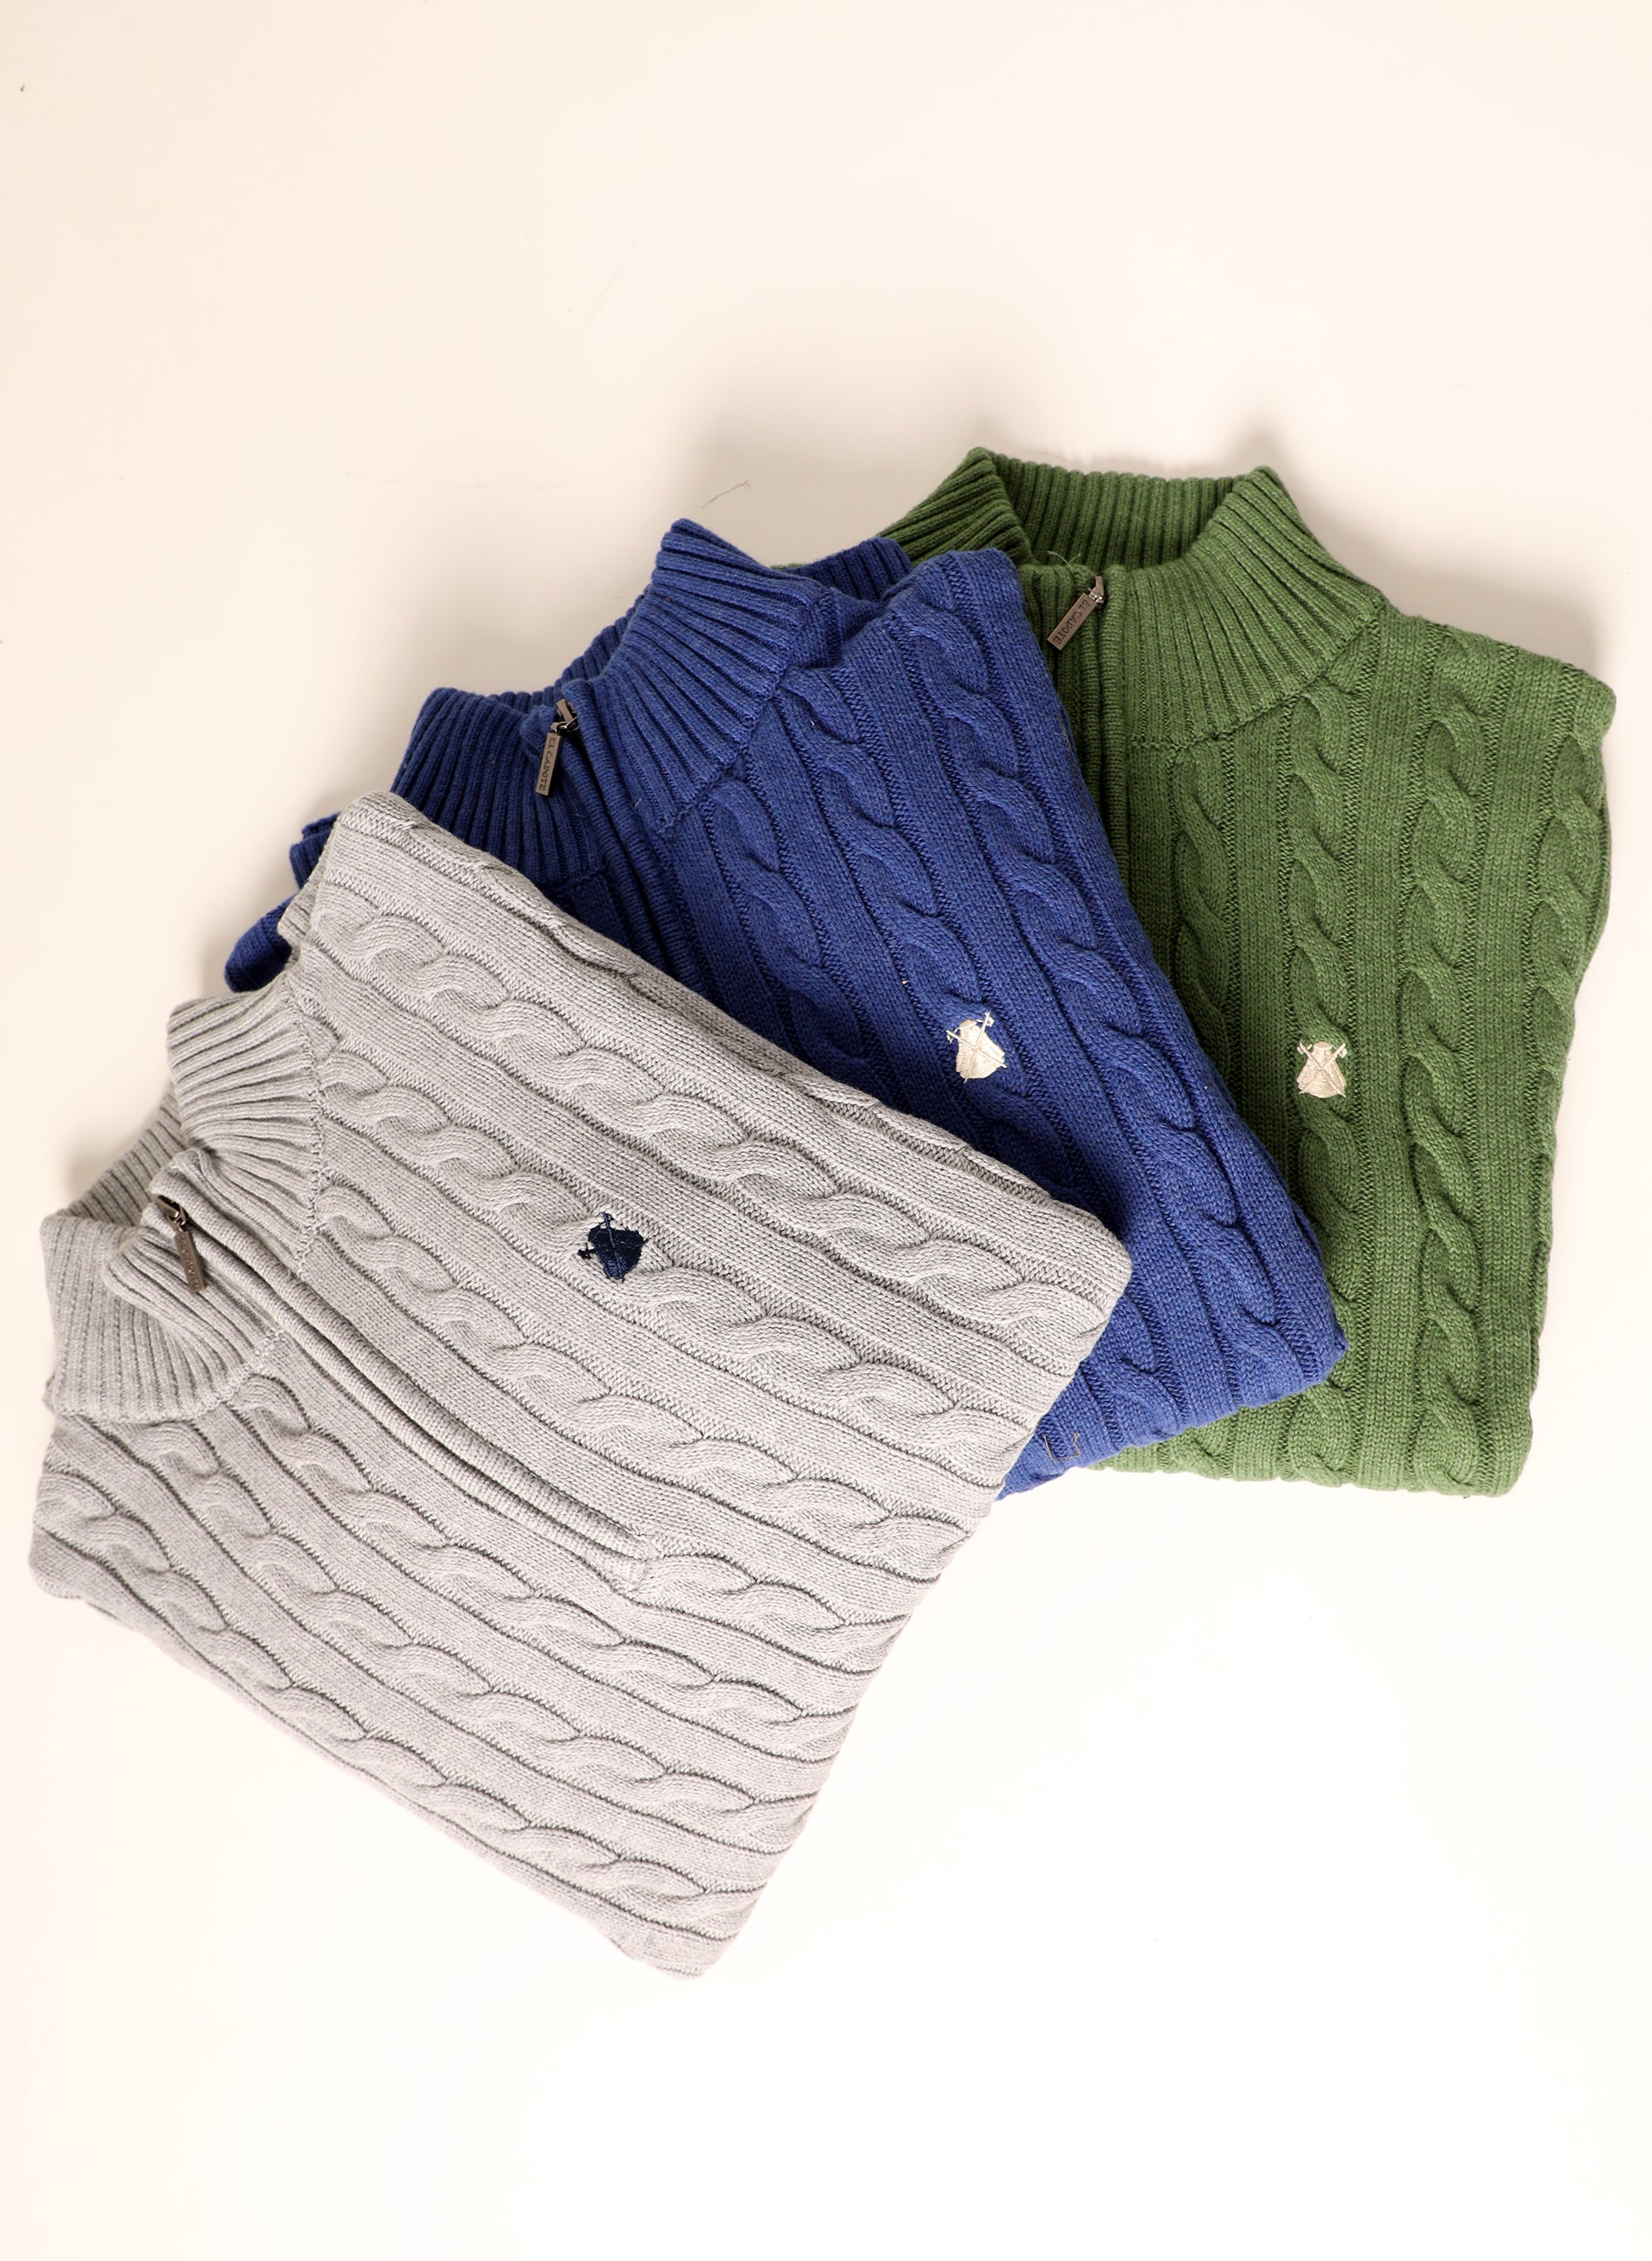 Green Eight Zipper Men's Sweater